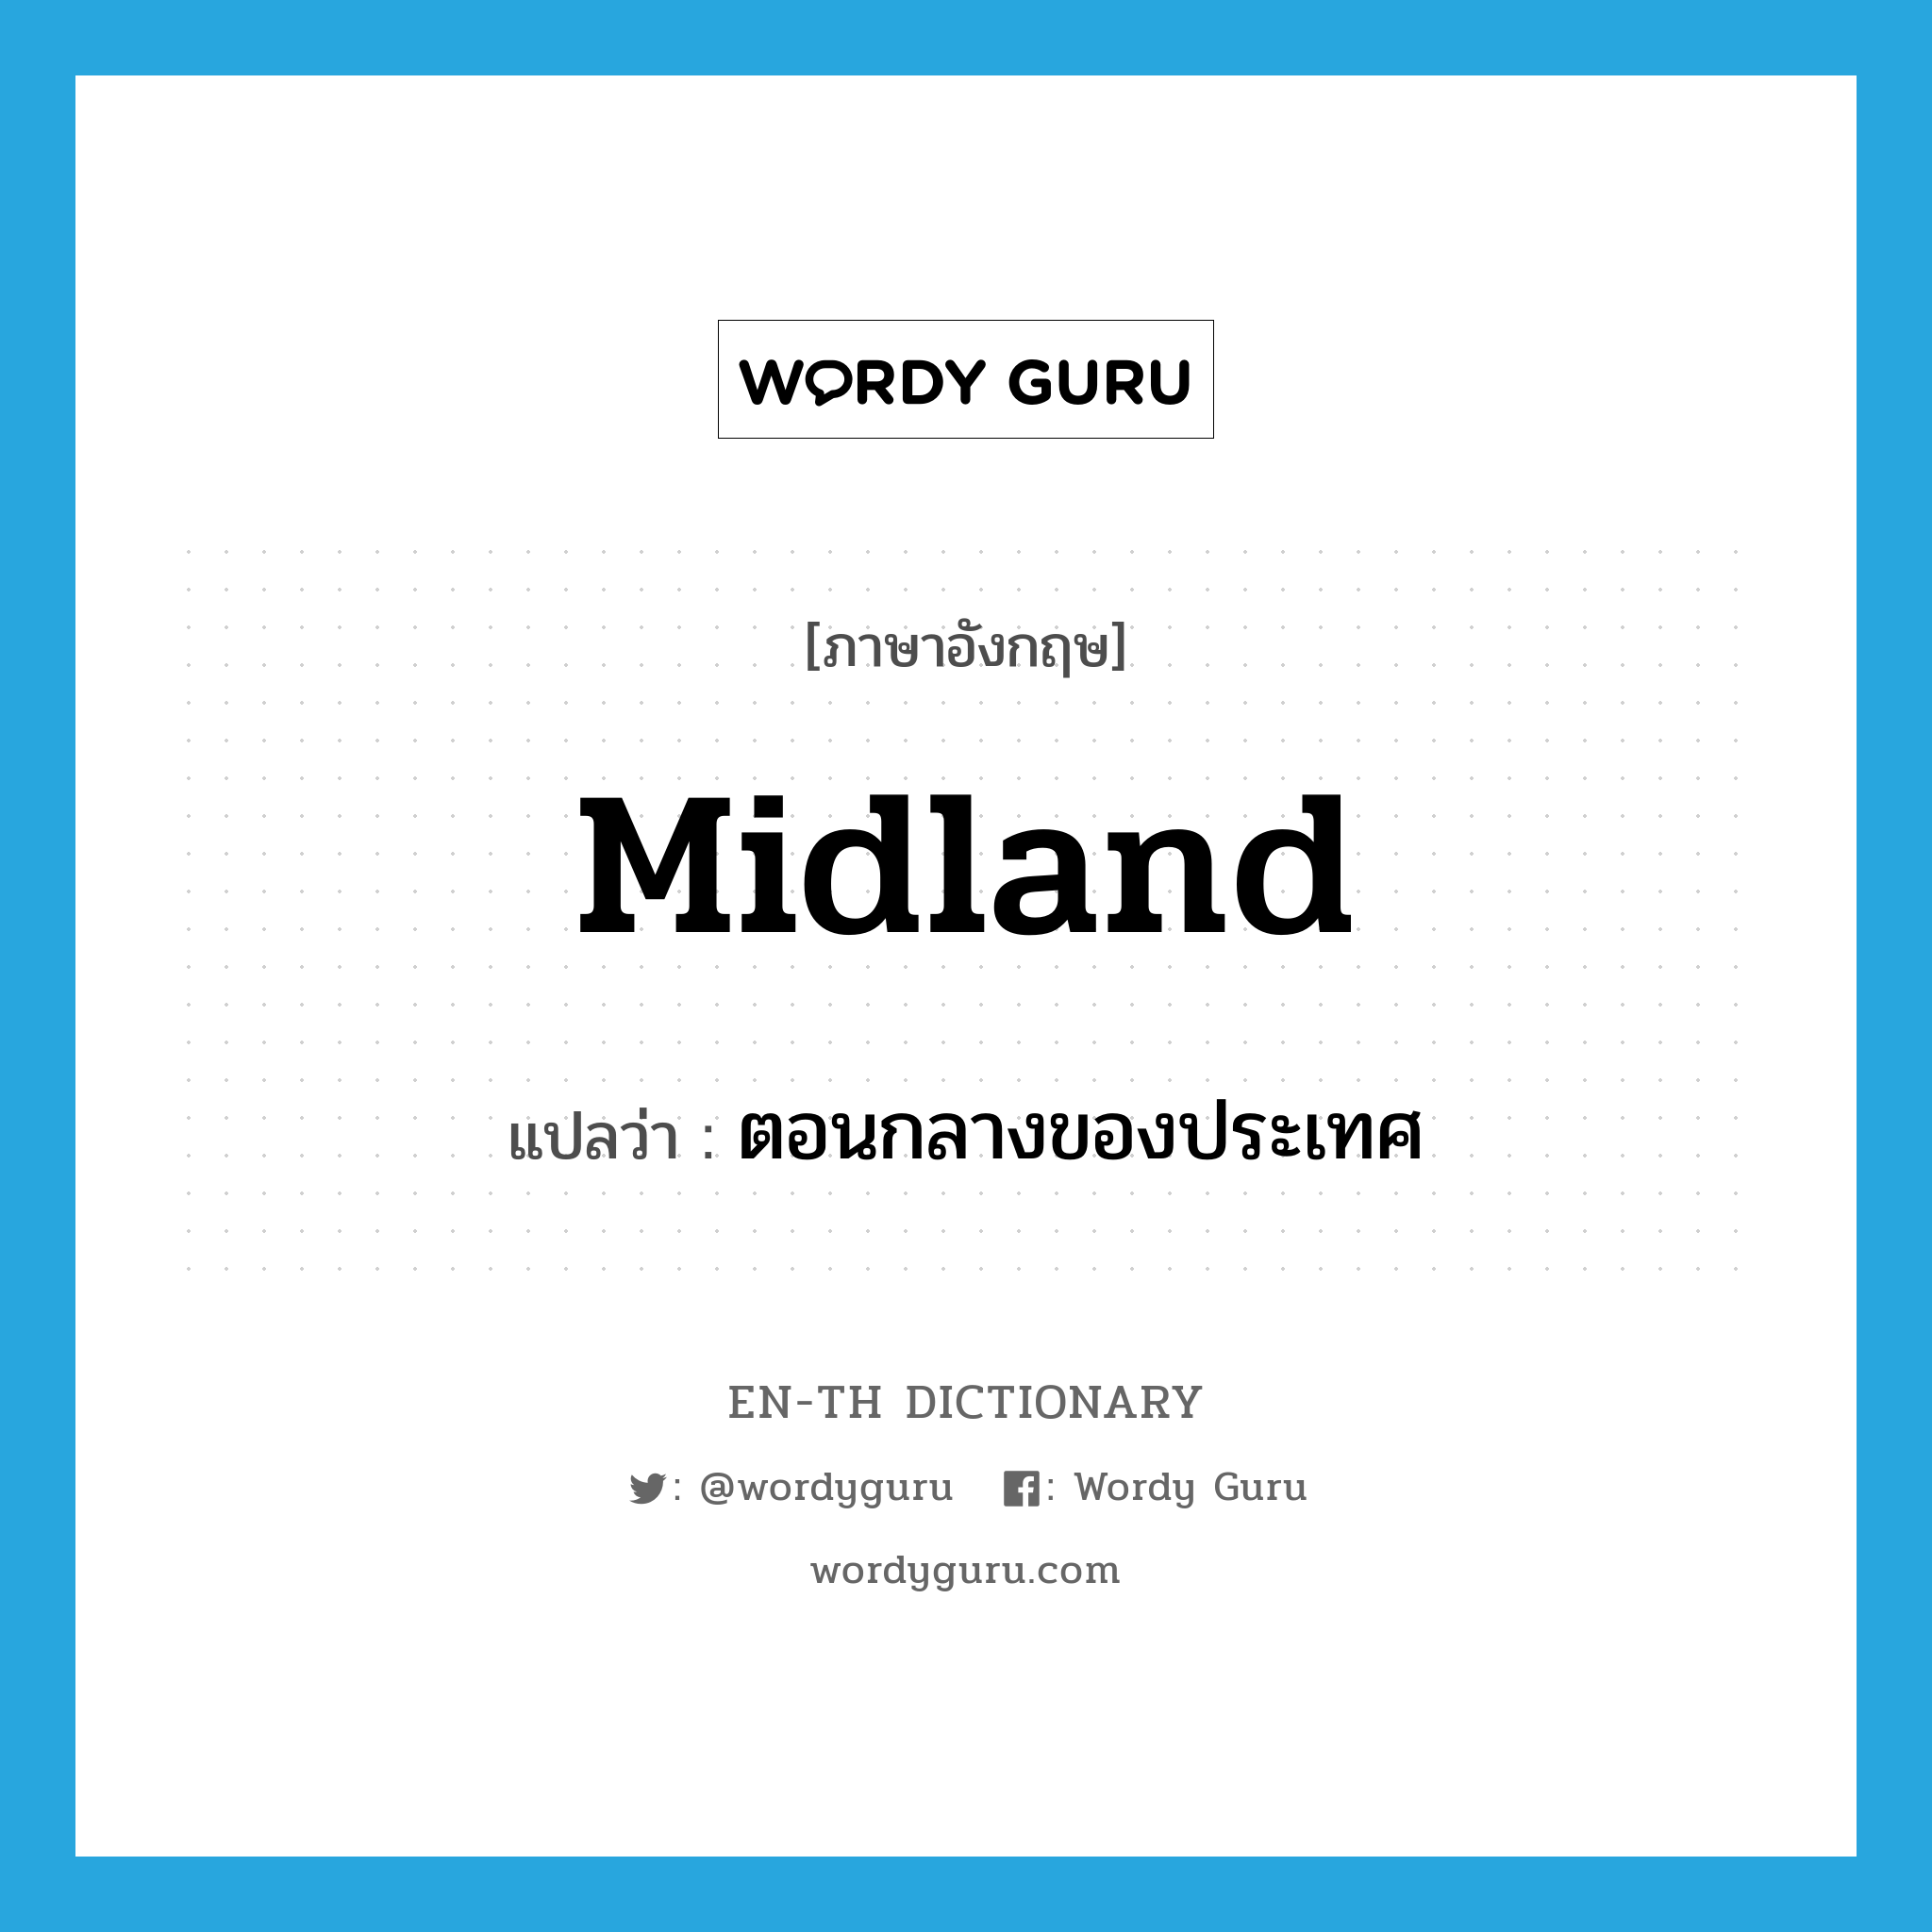 Midland แปลว่า?, คำศัพท์ภาษาอังกฤษ midland แปลว่า ตอนกลางของประเทศ ประเภท N หมวด N